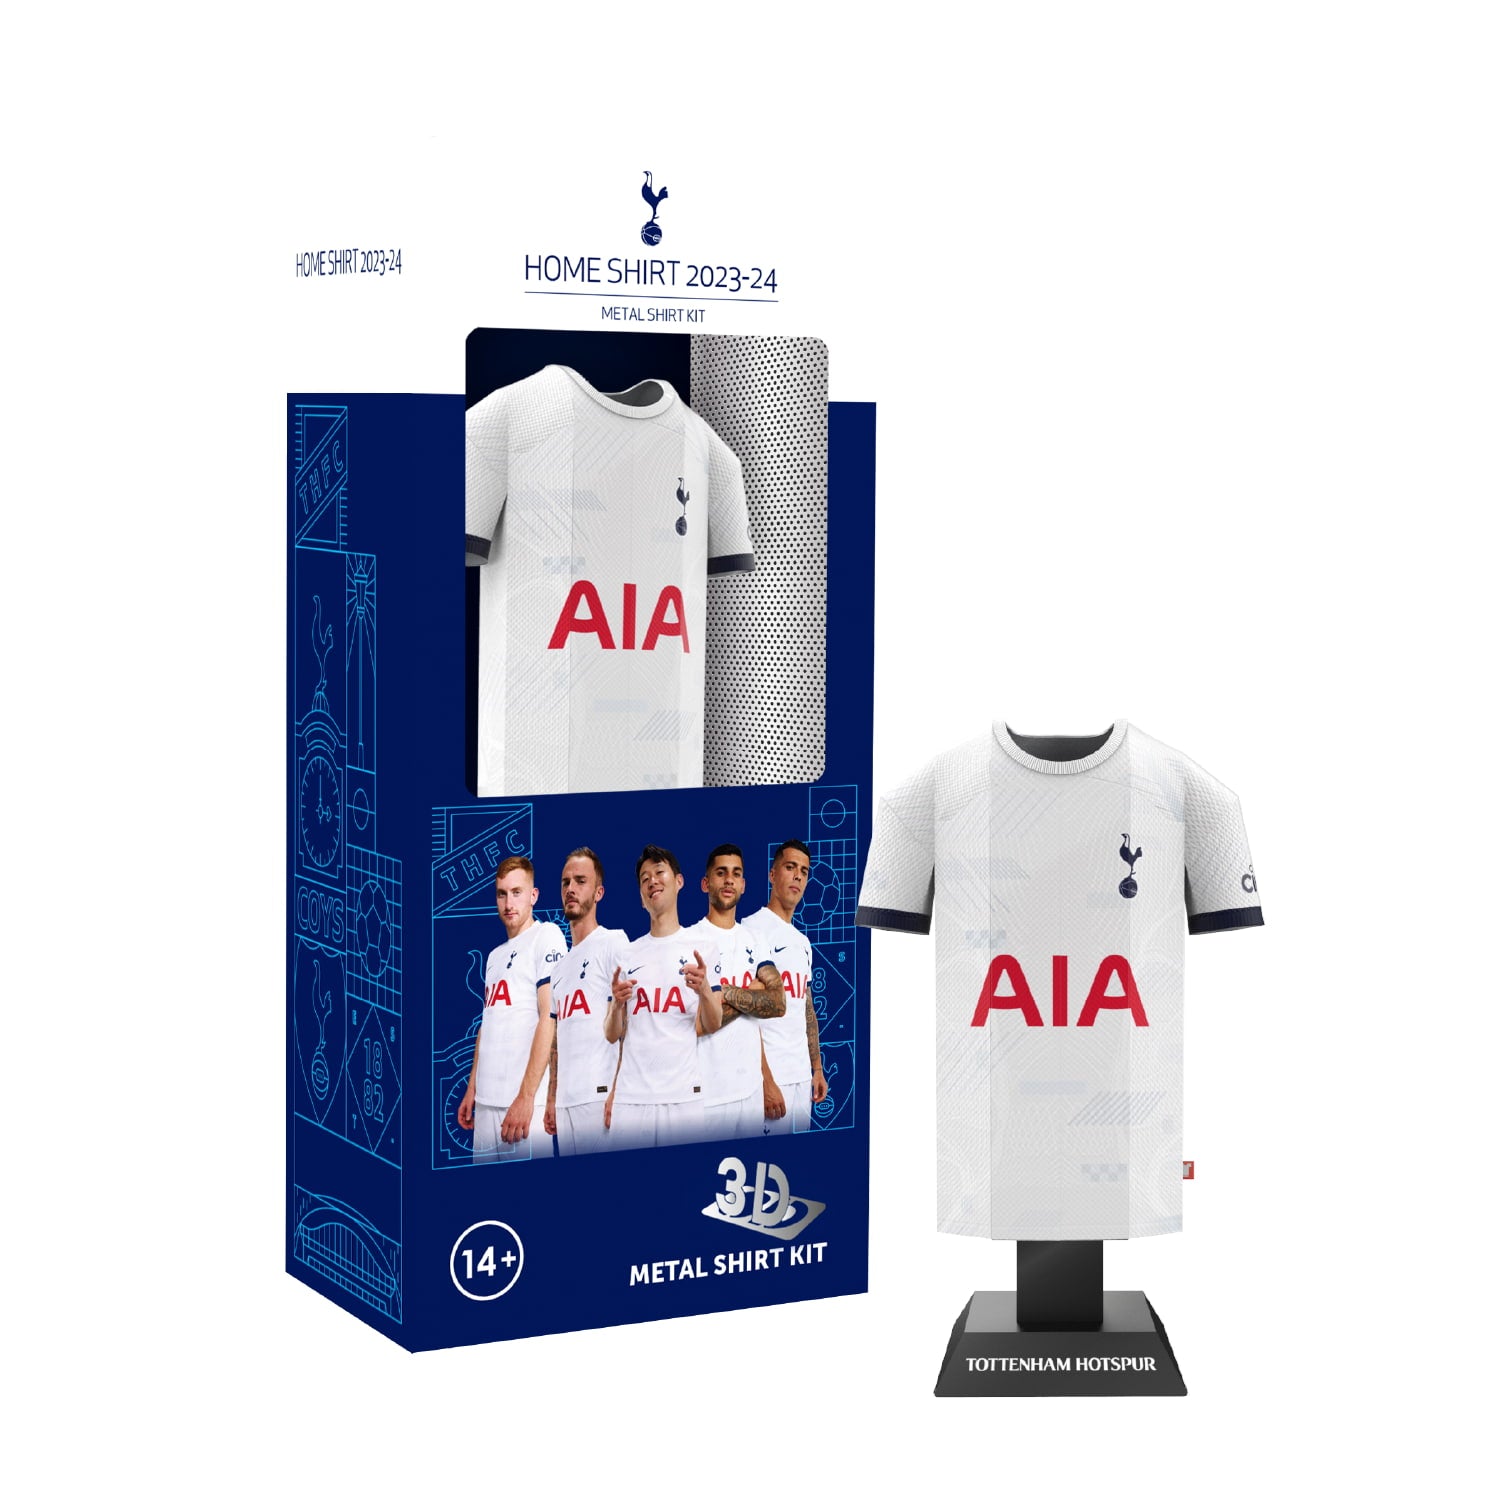 Tottenham home kit in locker packaging